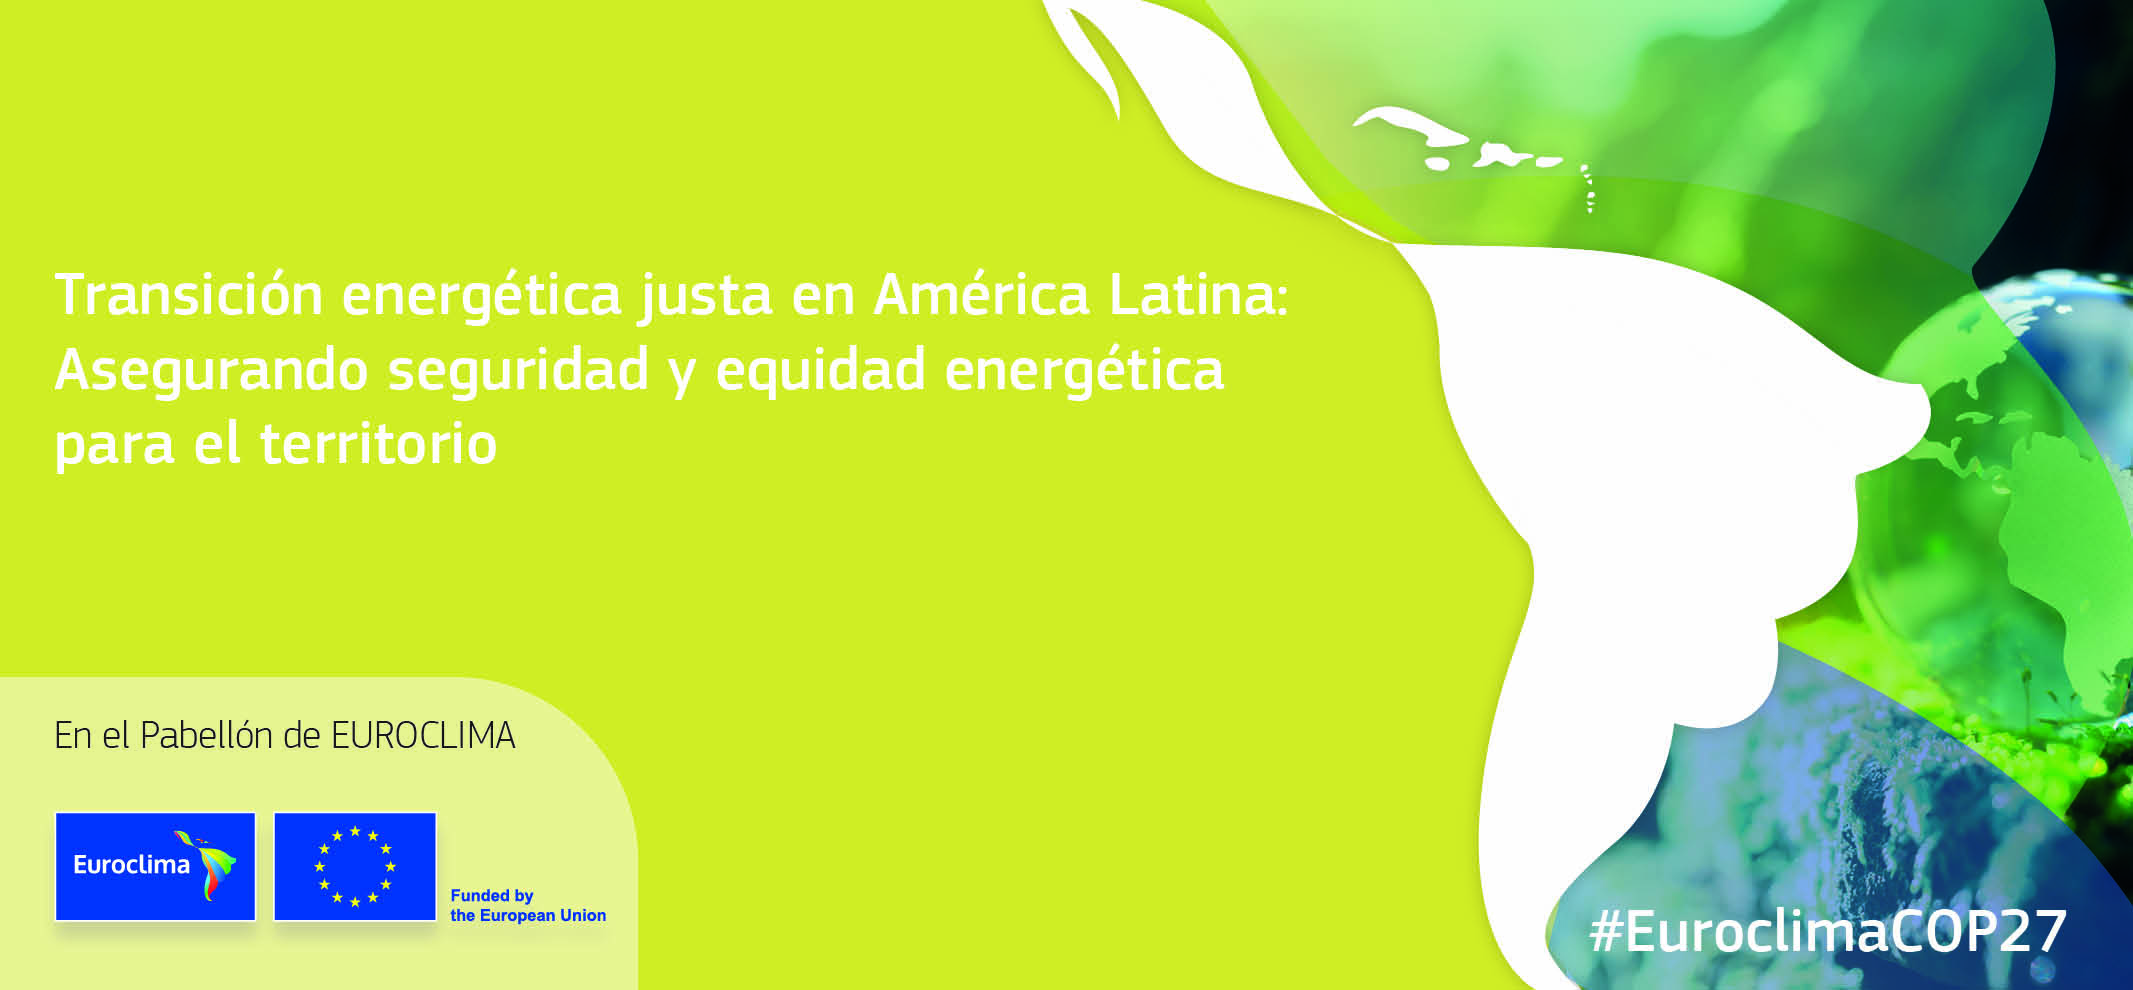 Transicion energetica justa en America Latina Asegurando seguridad y equidad energetica para el territorio